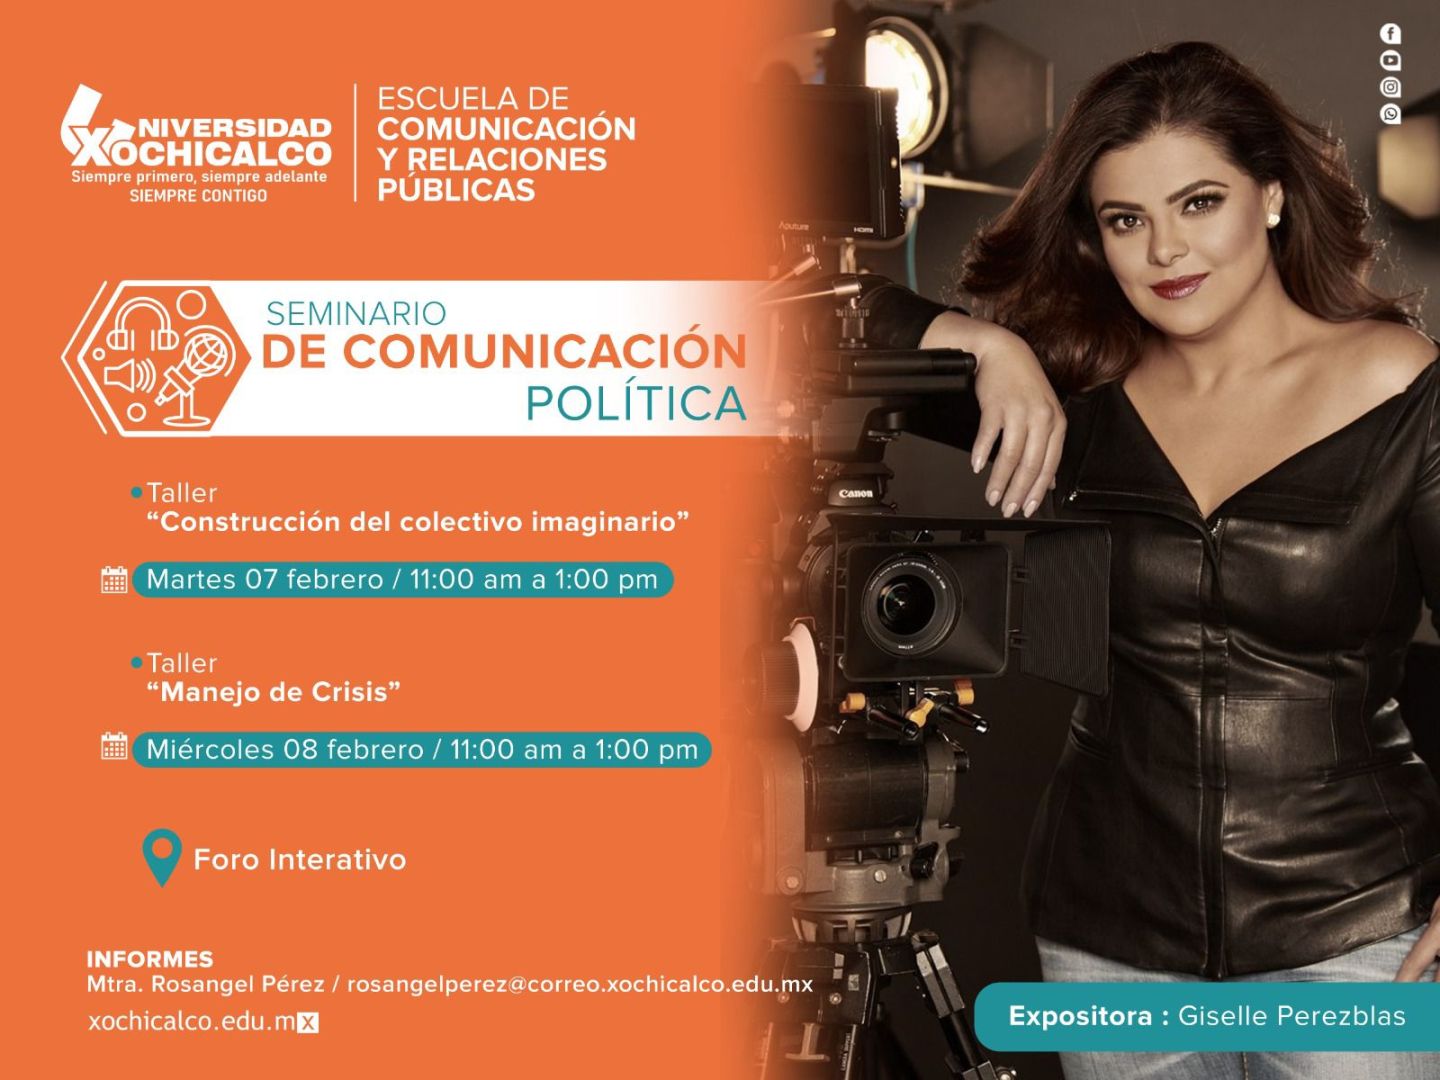 Universidad Xochicalco organiza seminario de comunicación política 